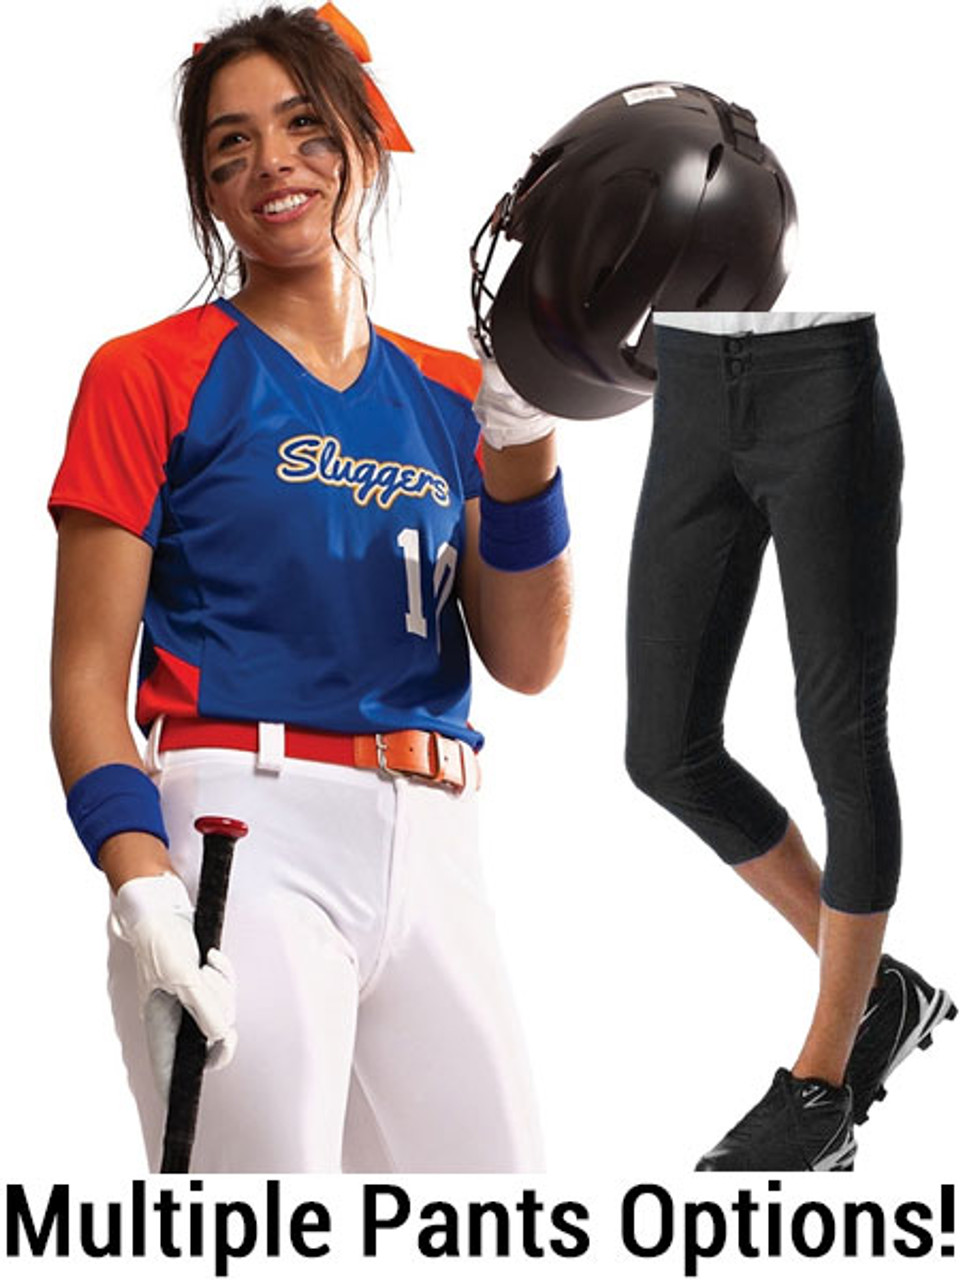 Womens/Girls Smooth Performance Cutter Softball Uniform Set